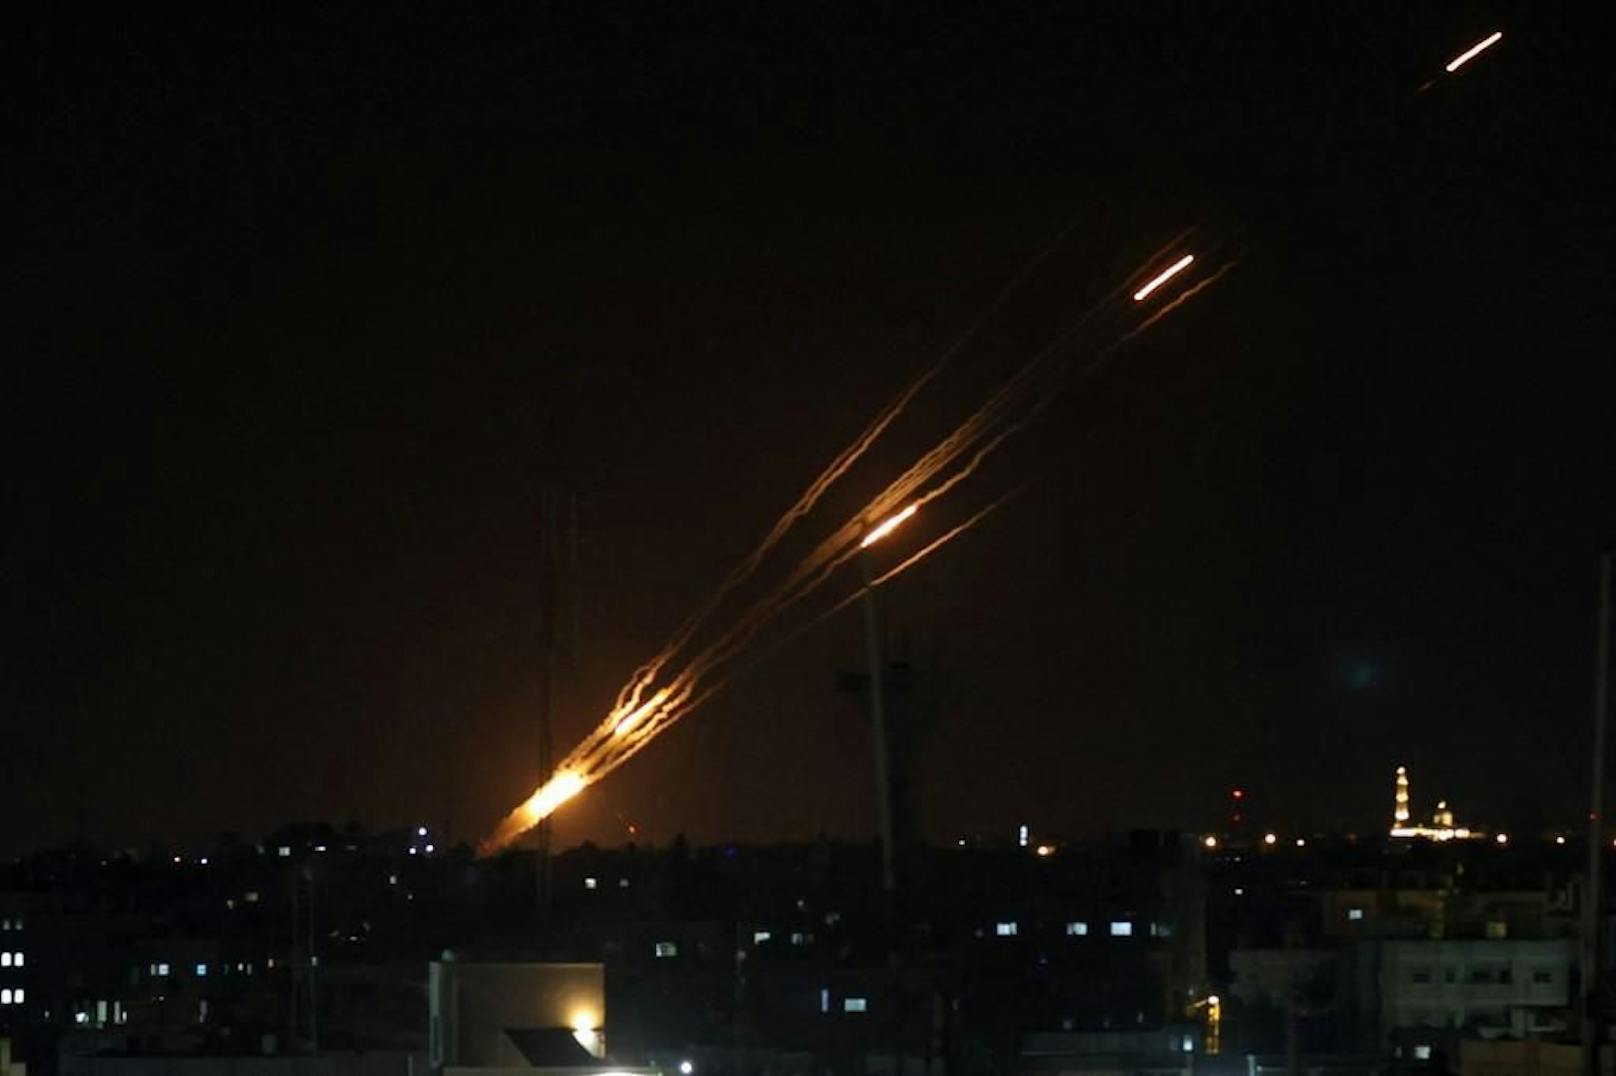 Das israelische Abwehrsystem Iron Dome ist aktiviert: Raketen aus dem Gazastreifen fliegen in Richtung Israel. (Archivbild)